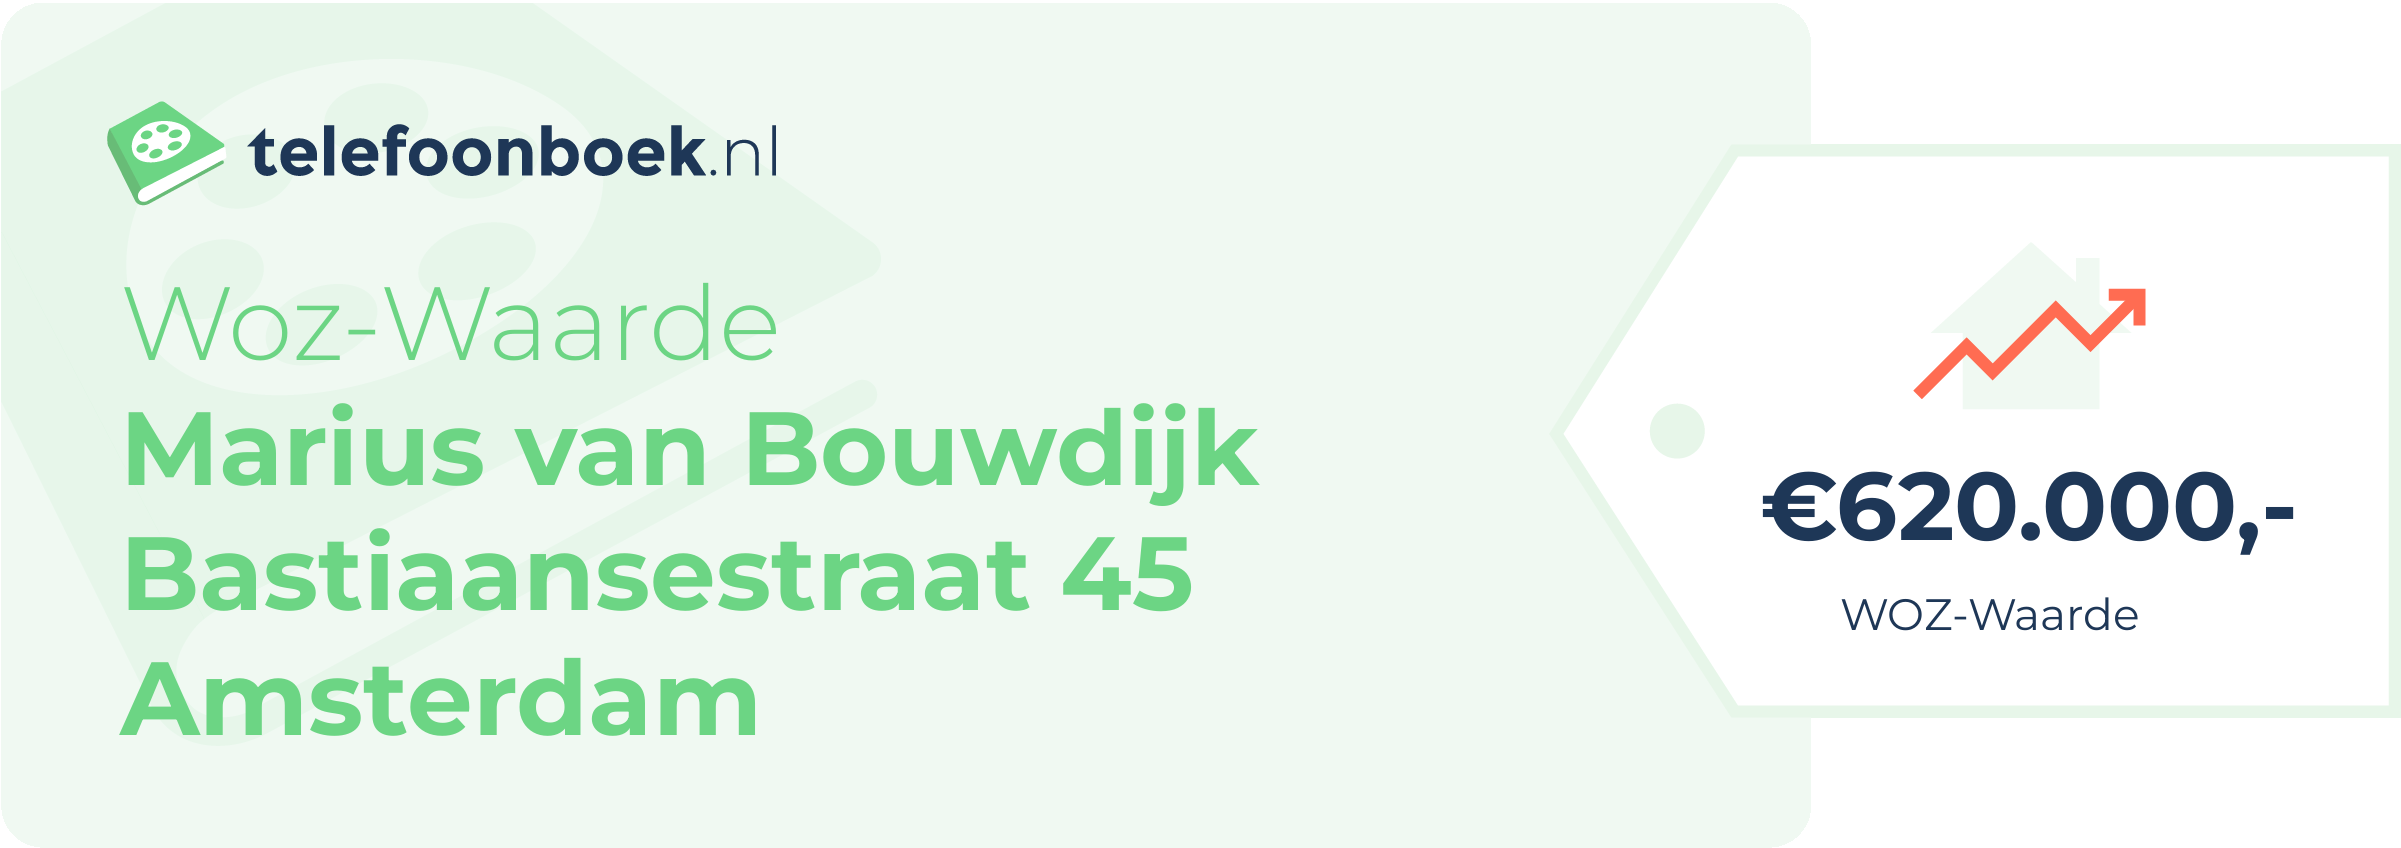 WOZ-waarde Marius Van Bouwdijk Bastiaansestraat 45 Amsterdam